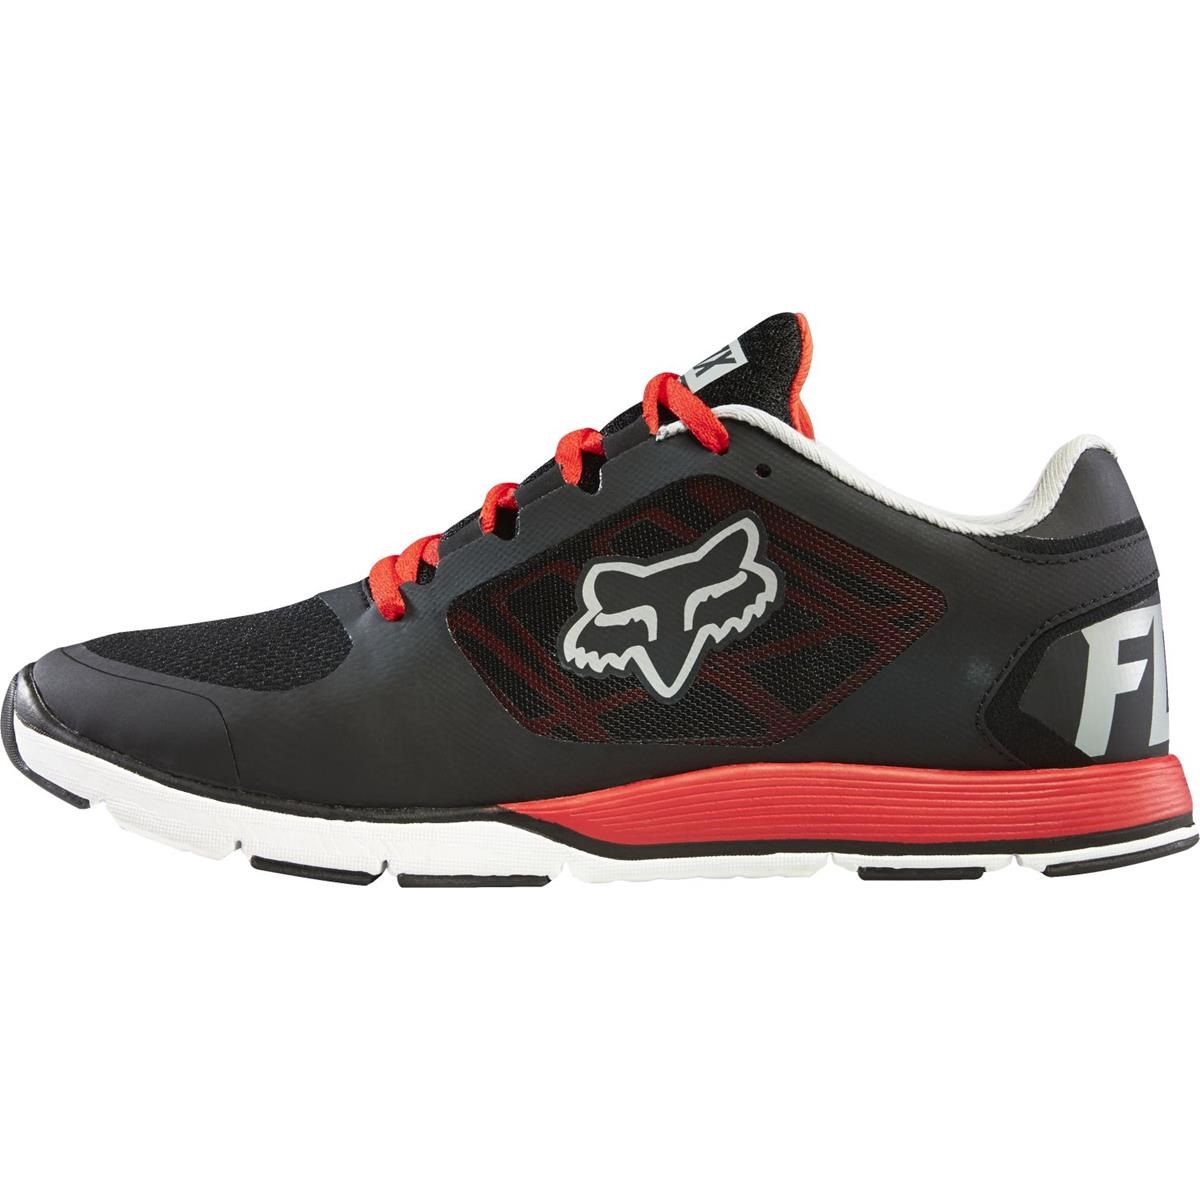 Fox Shoes Motion Evo Black/Red